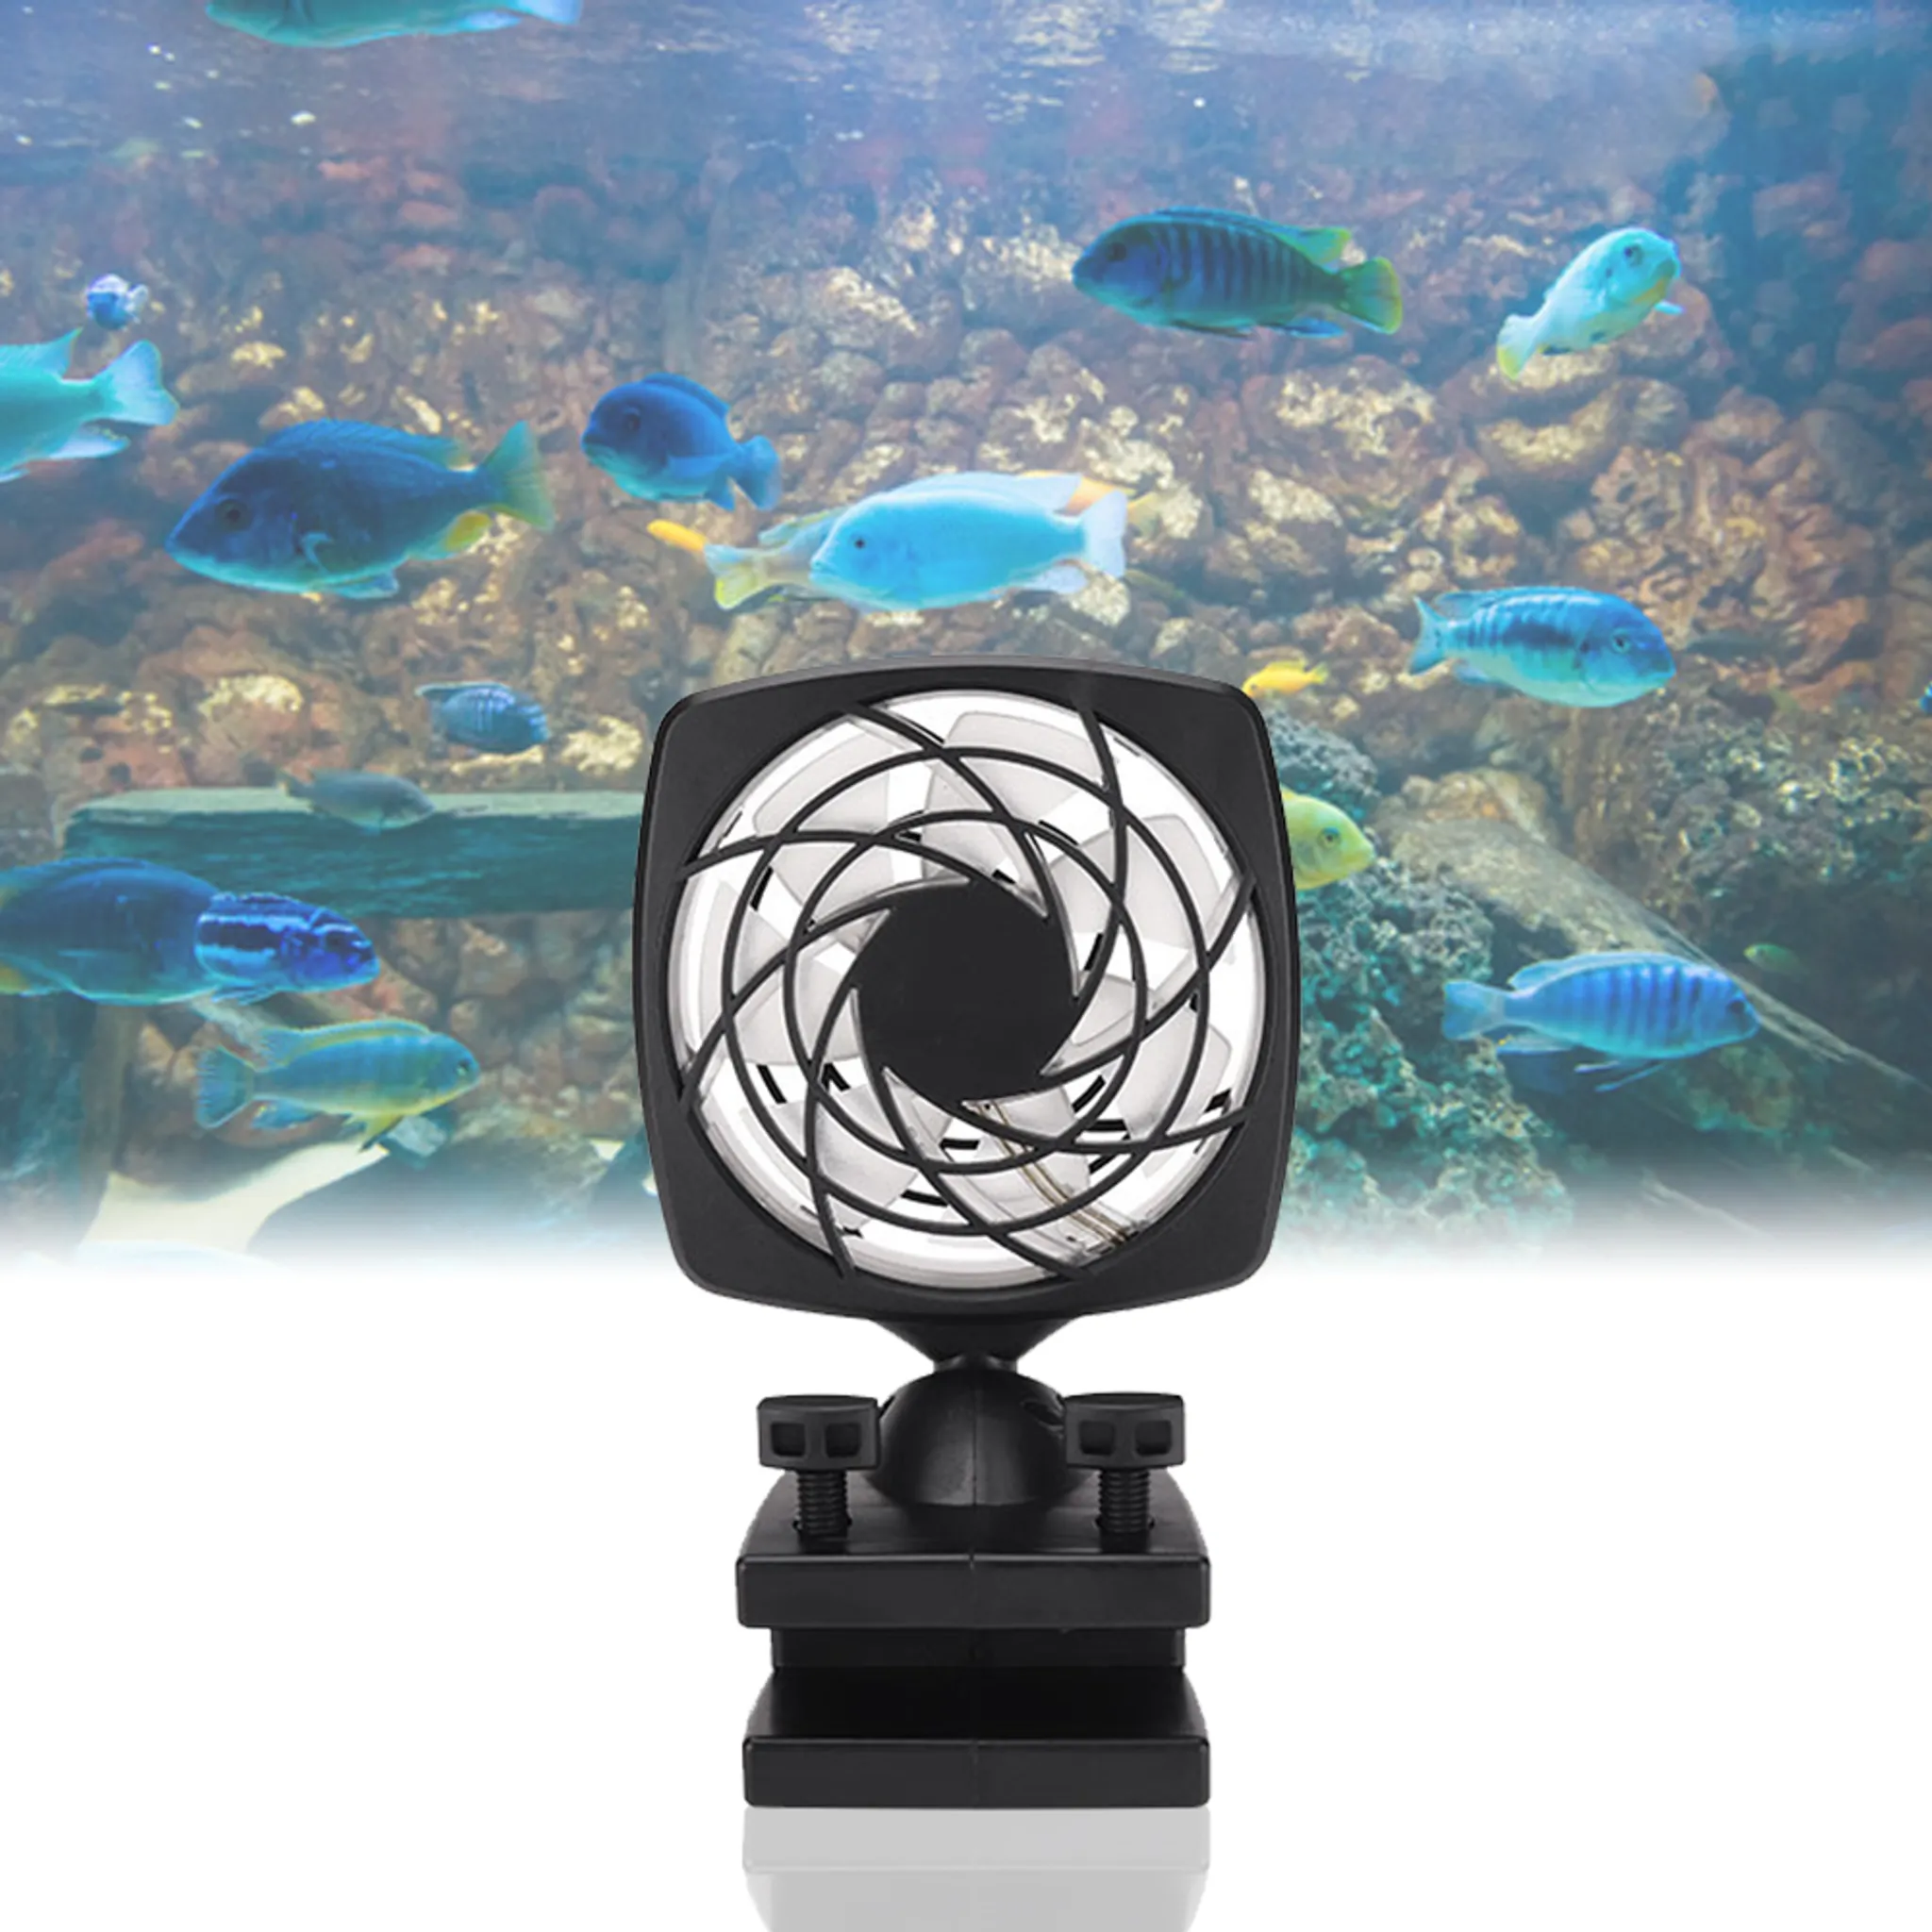 Fisch Sauerstoff Luftpumpe Aquarium Ultra leise USB Sauerstoff